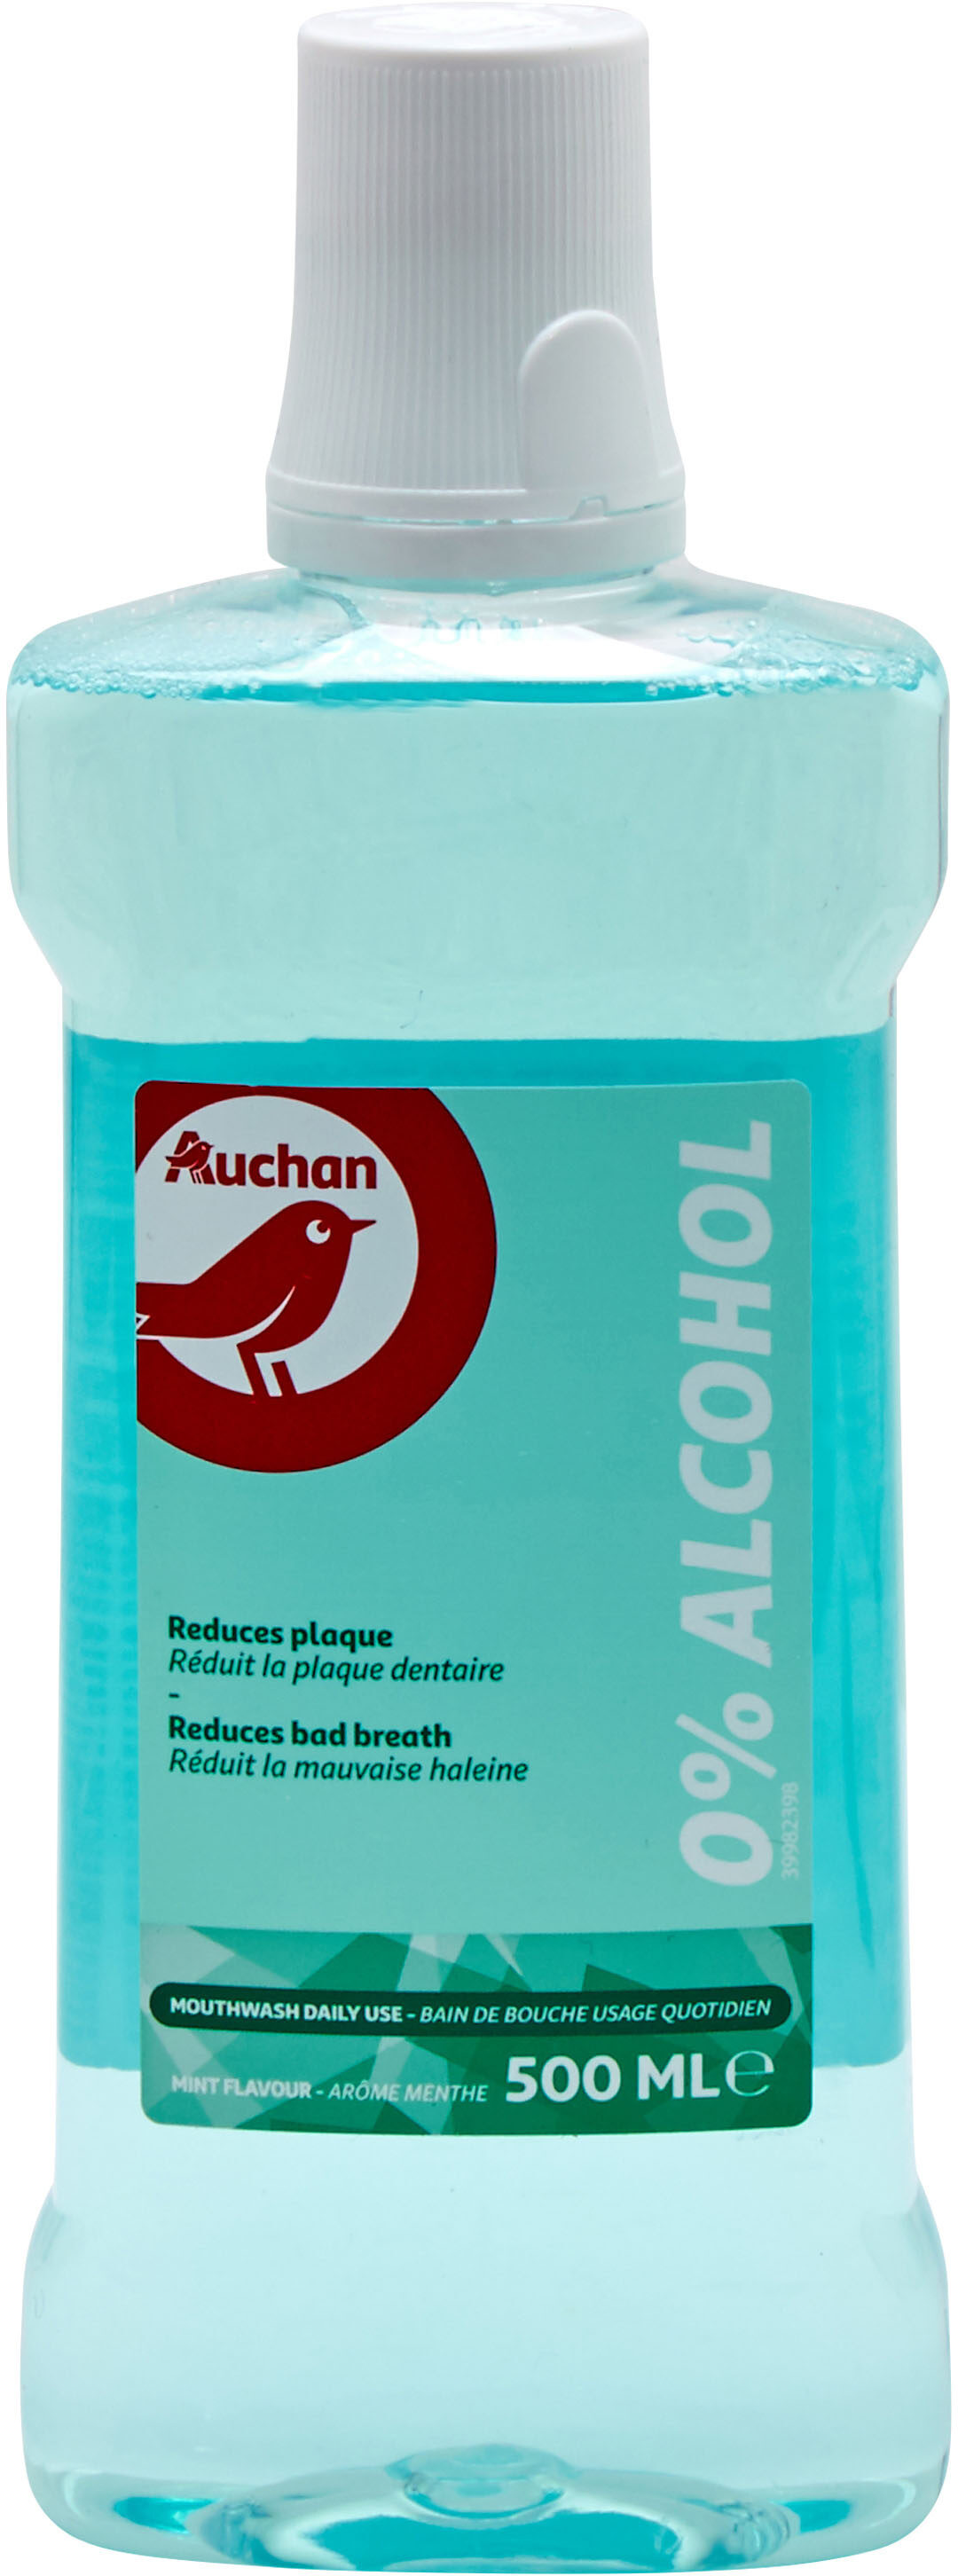 Auchan - bain de bouche - fraicheur 0% alcool - 500ml - Produkt - fr